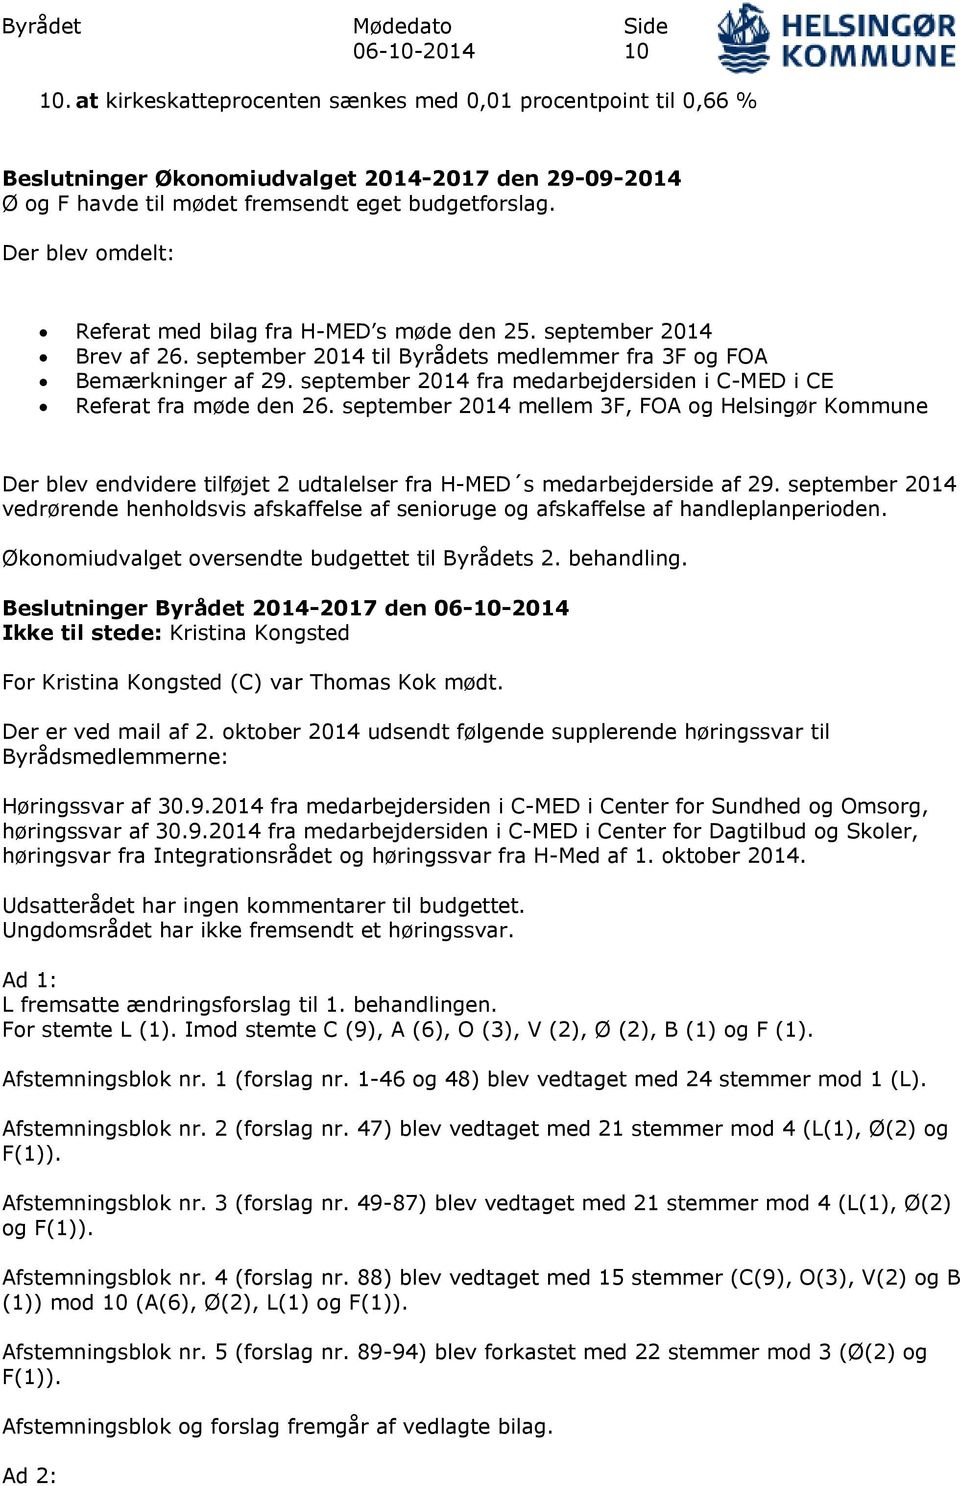 september 2014 fra medarbejdersiden i C-MED i CE Referat fra møde den 26. september 2014 mellem 3F, FOA og Helsingør Kommune Der blev endvidere tilføjet 2 udtalelser fra H-MED s medarbejderside af 29.